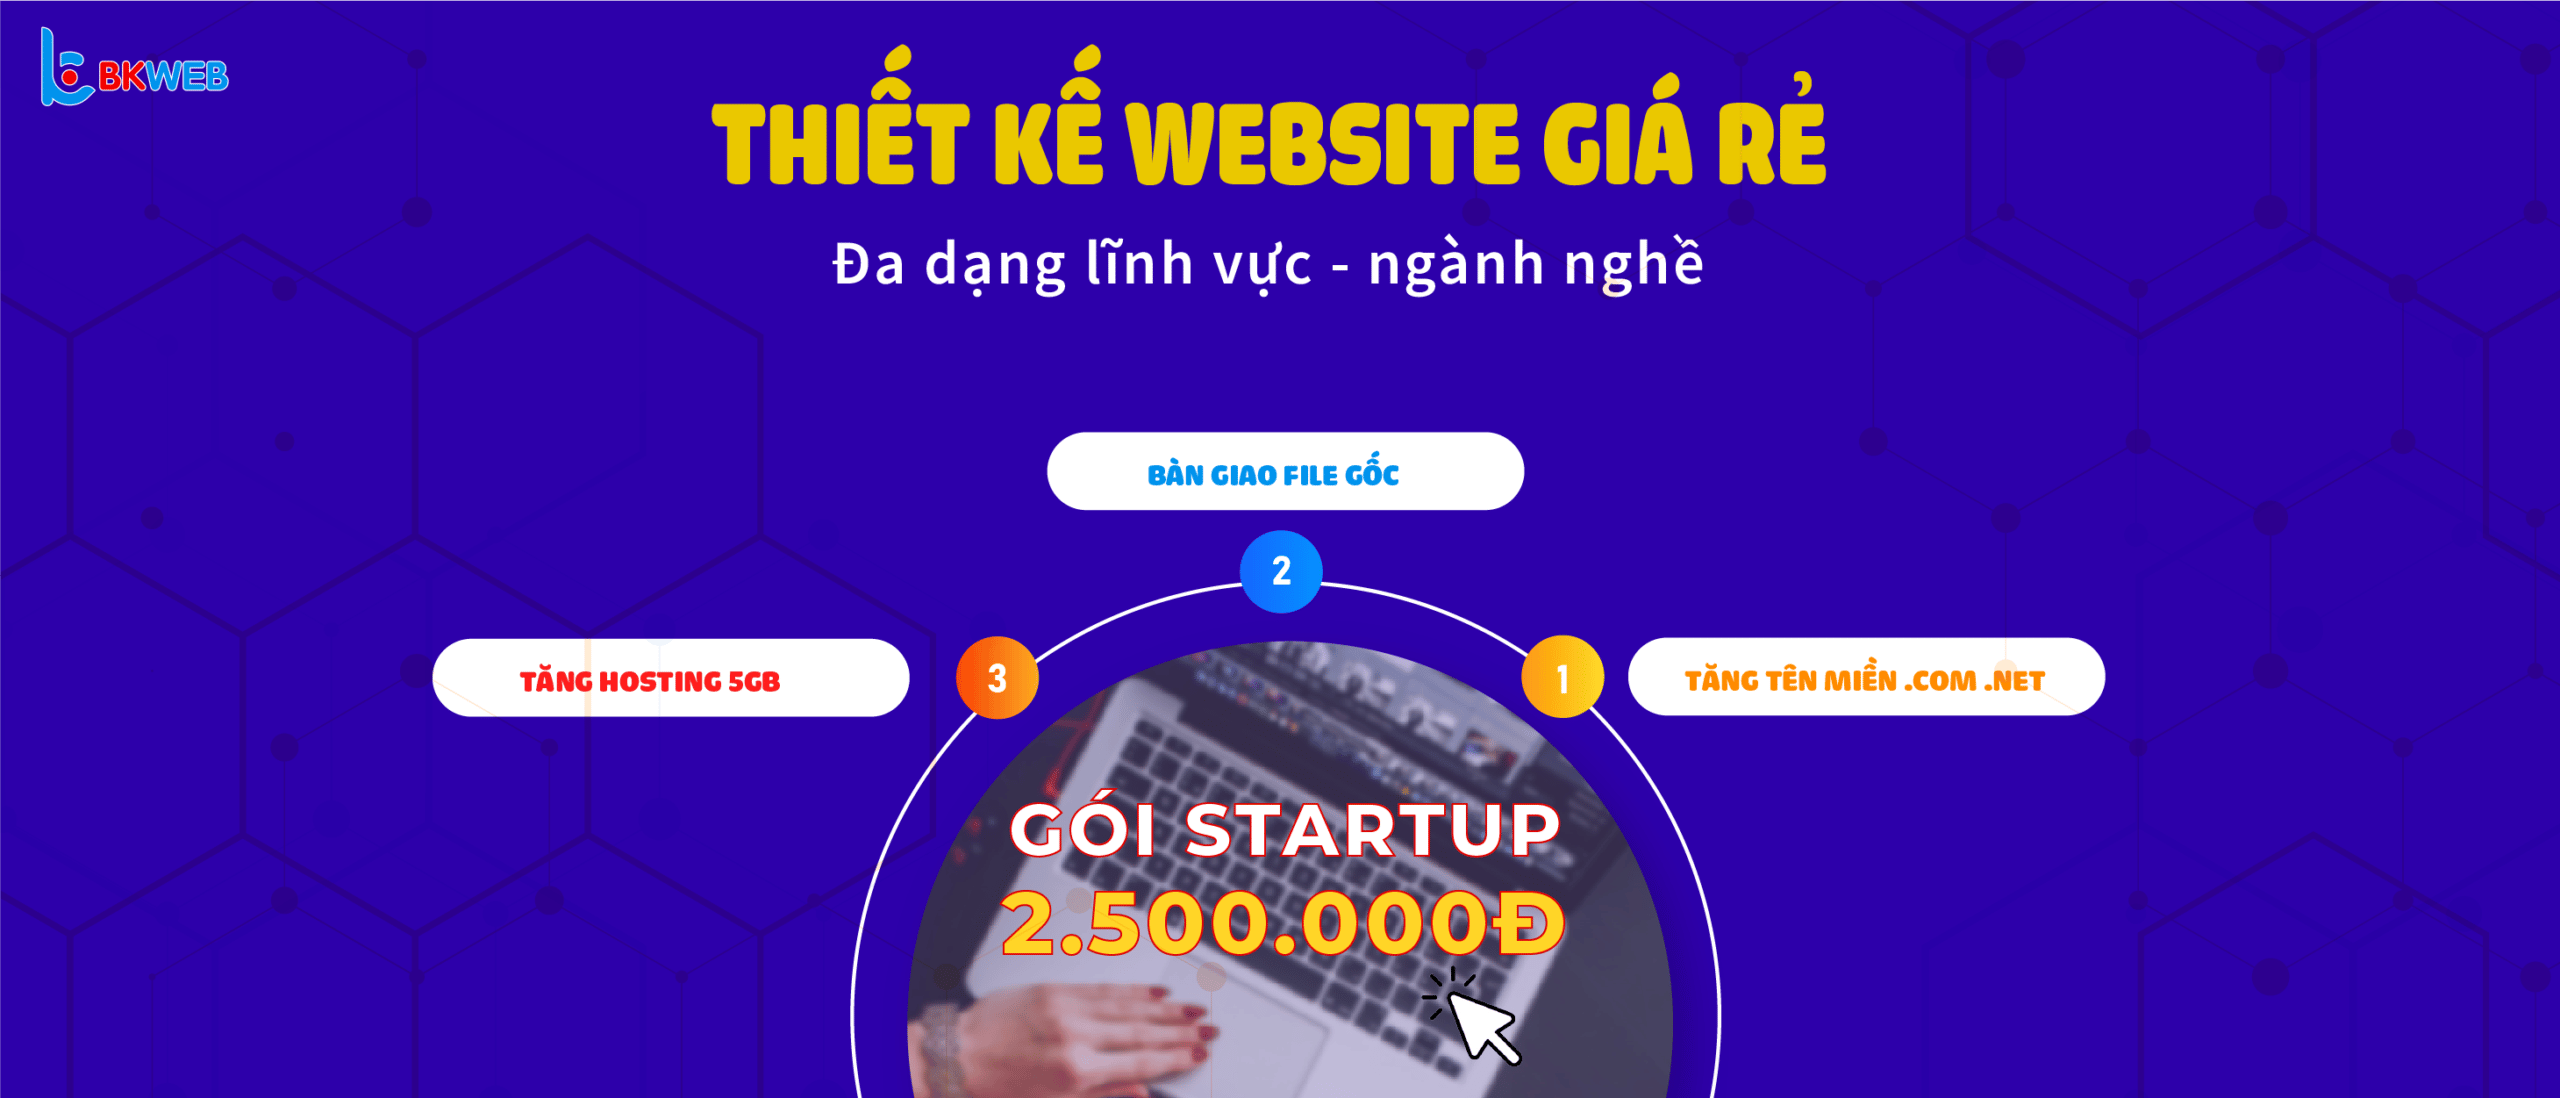 Thiết kế website giá rẻ